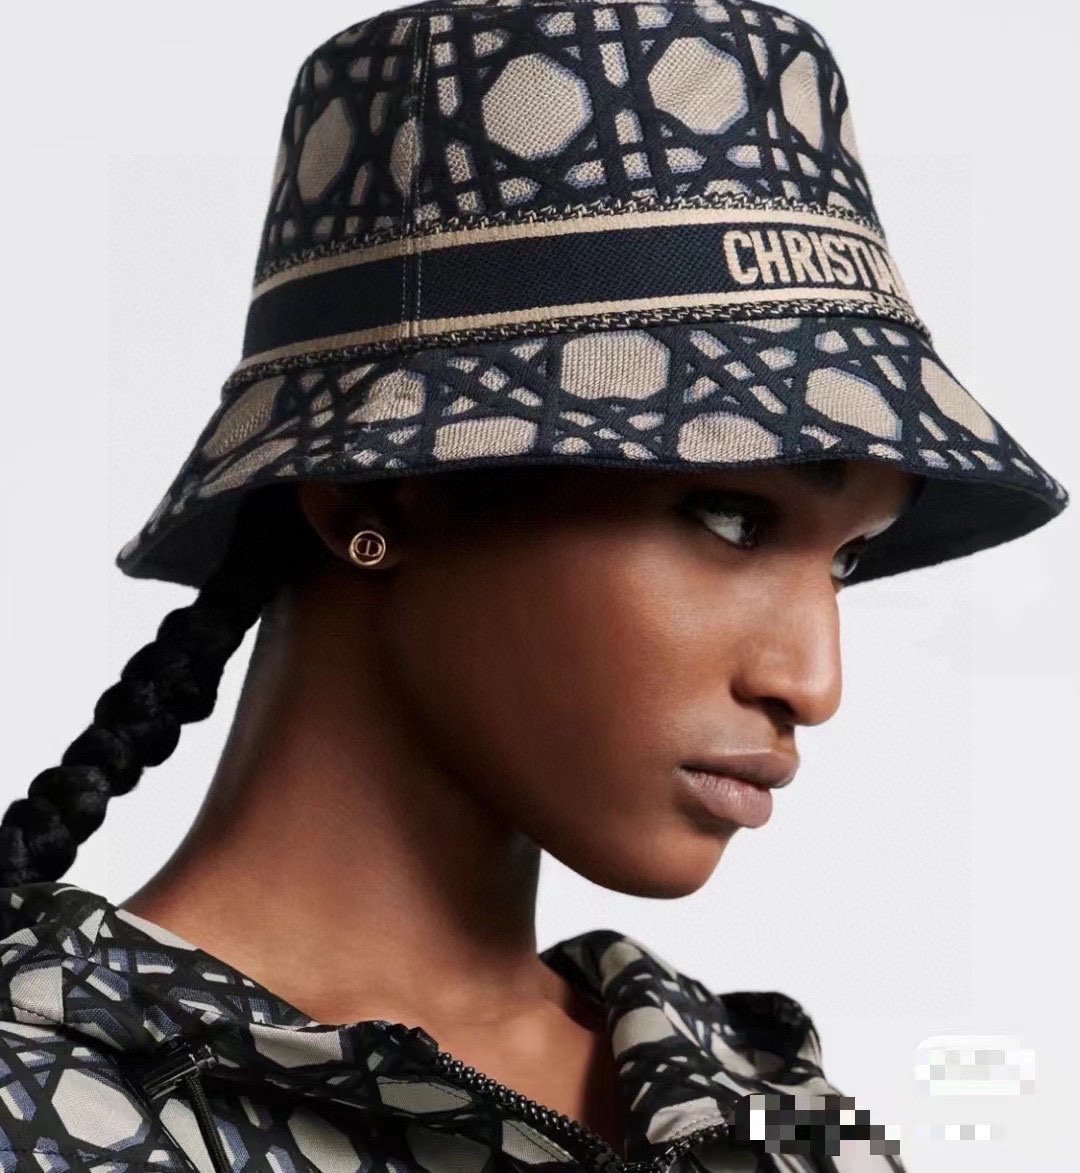 Dior迪奥新款原单渔夫帽精致純也格调很有感觉很酷很时尚专柜断货热门质量超赞